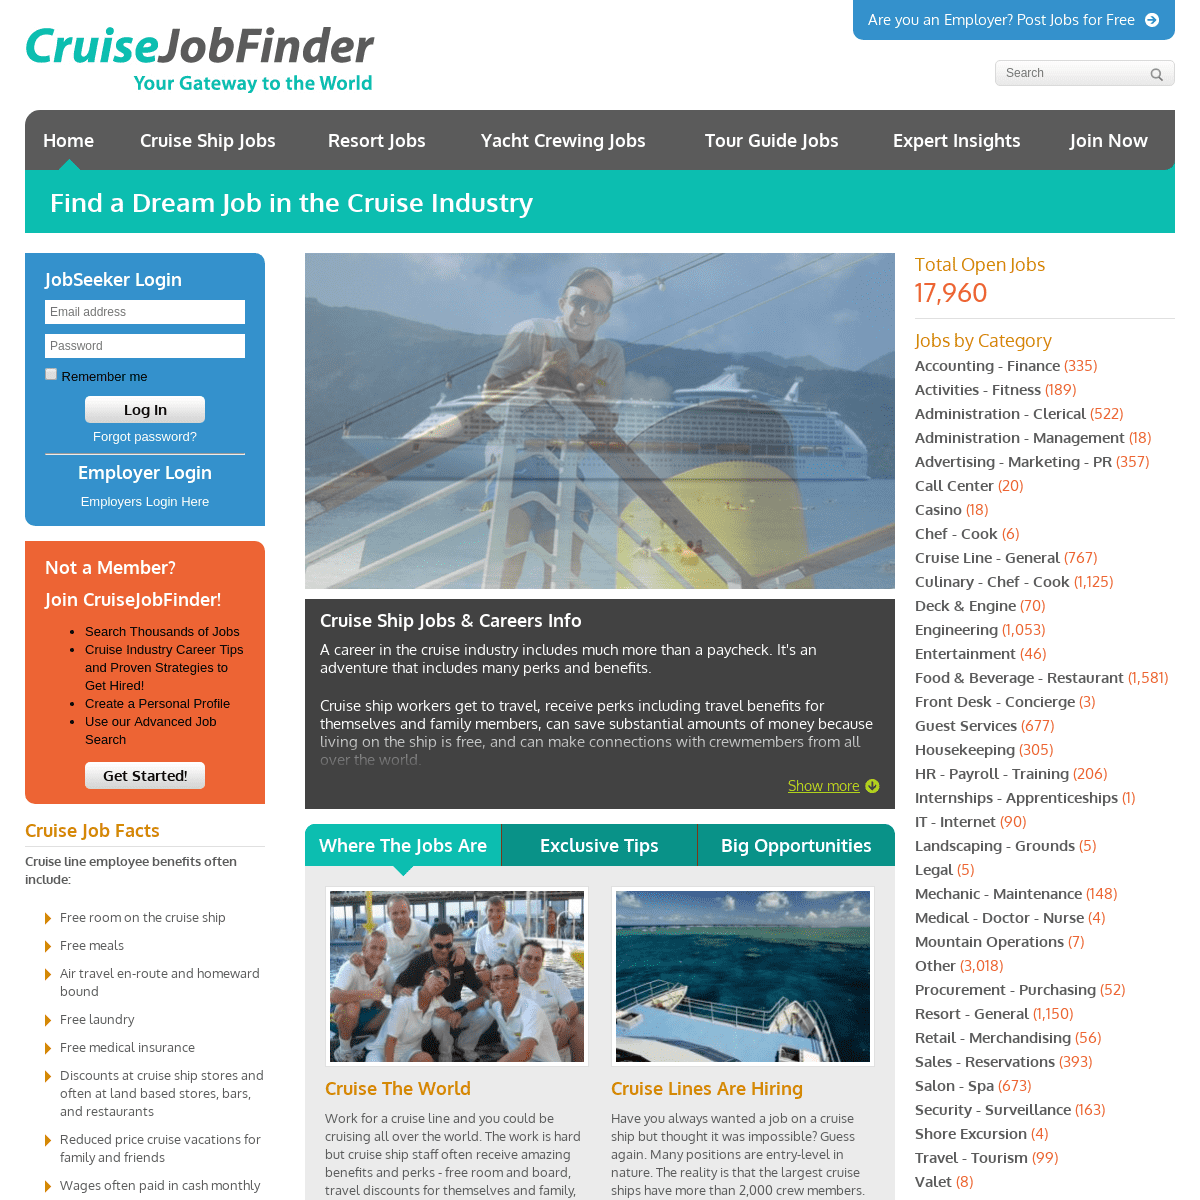 Cruise Ship Job Experts - Latest Job Listings | CruiseJobFinder